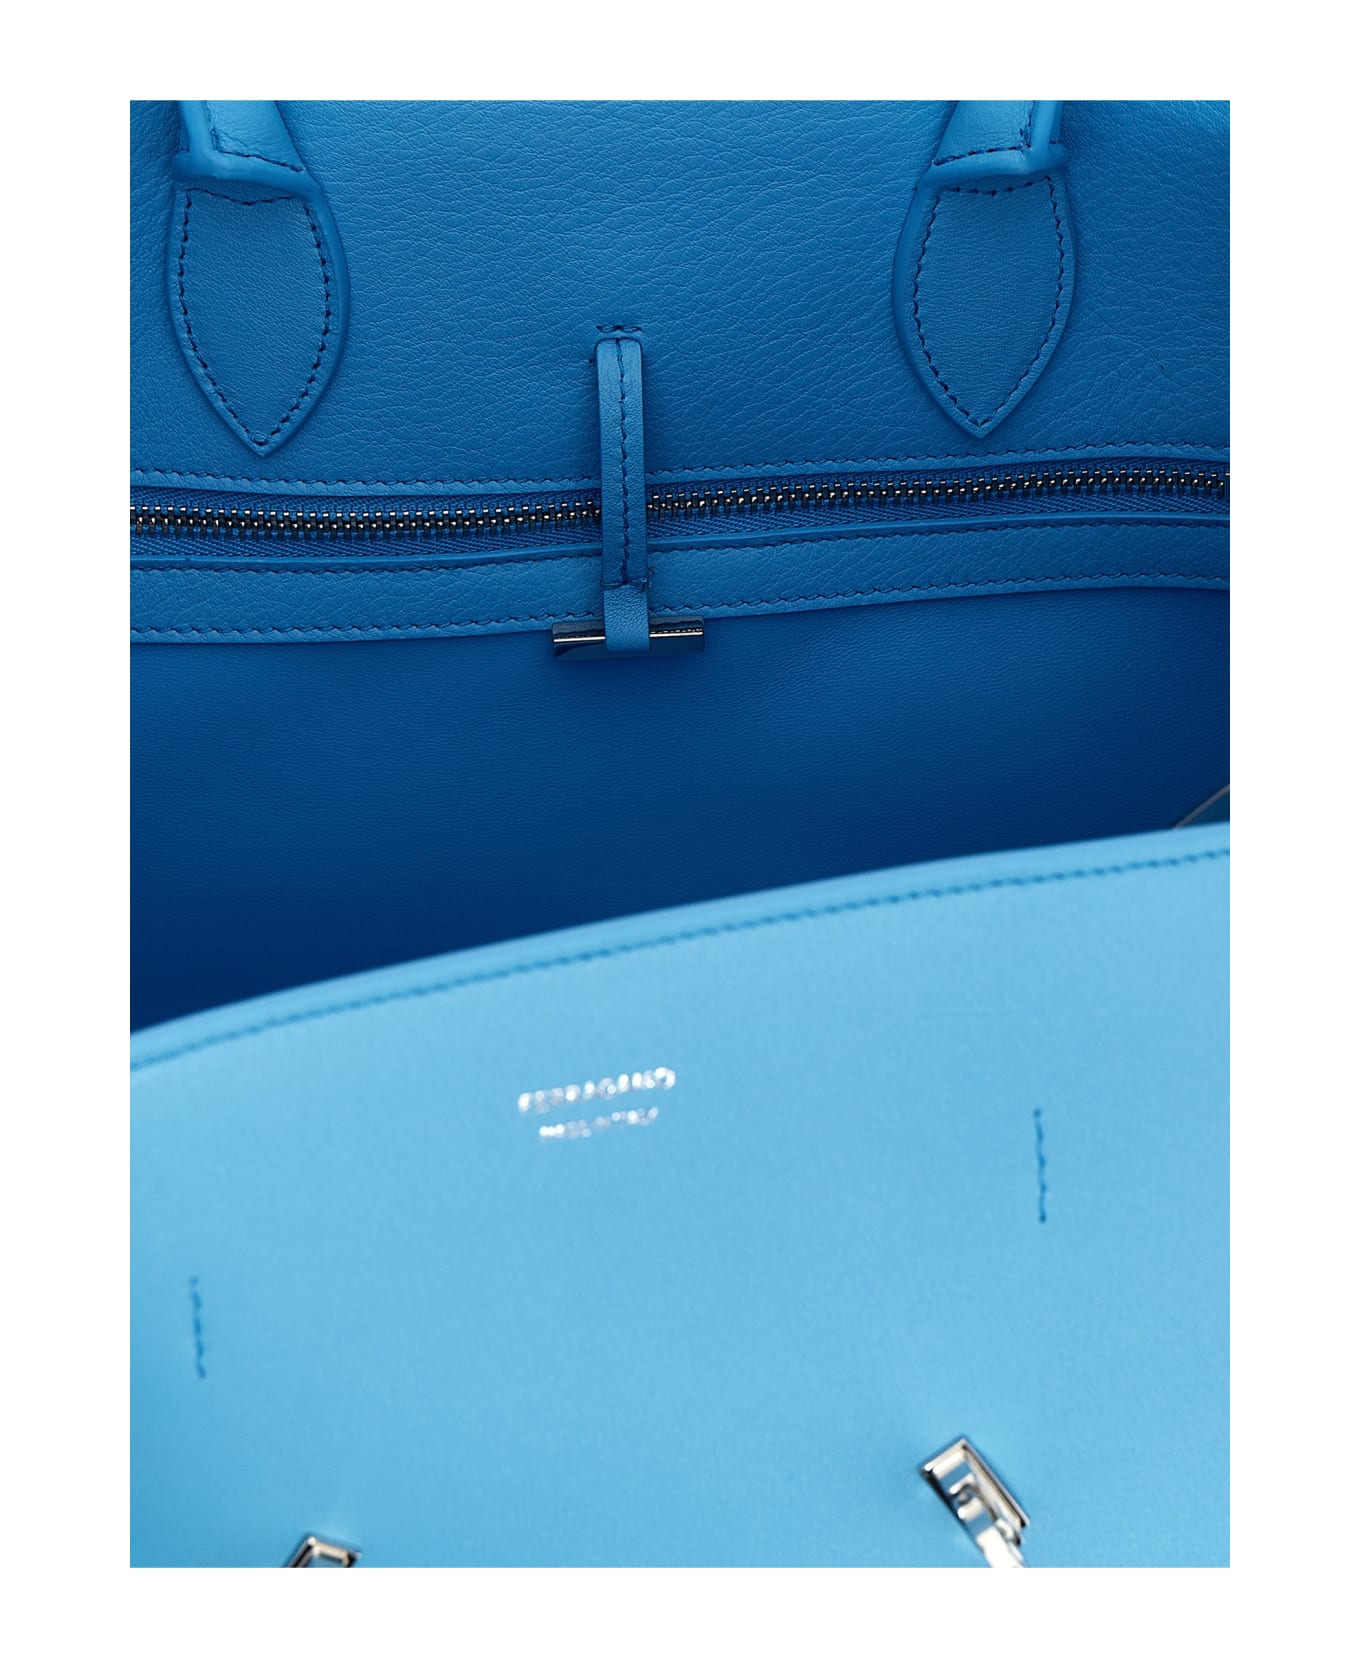 Ferragamo 'hug S' Handbag - Light Blue トートバッグ